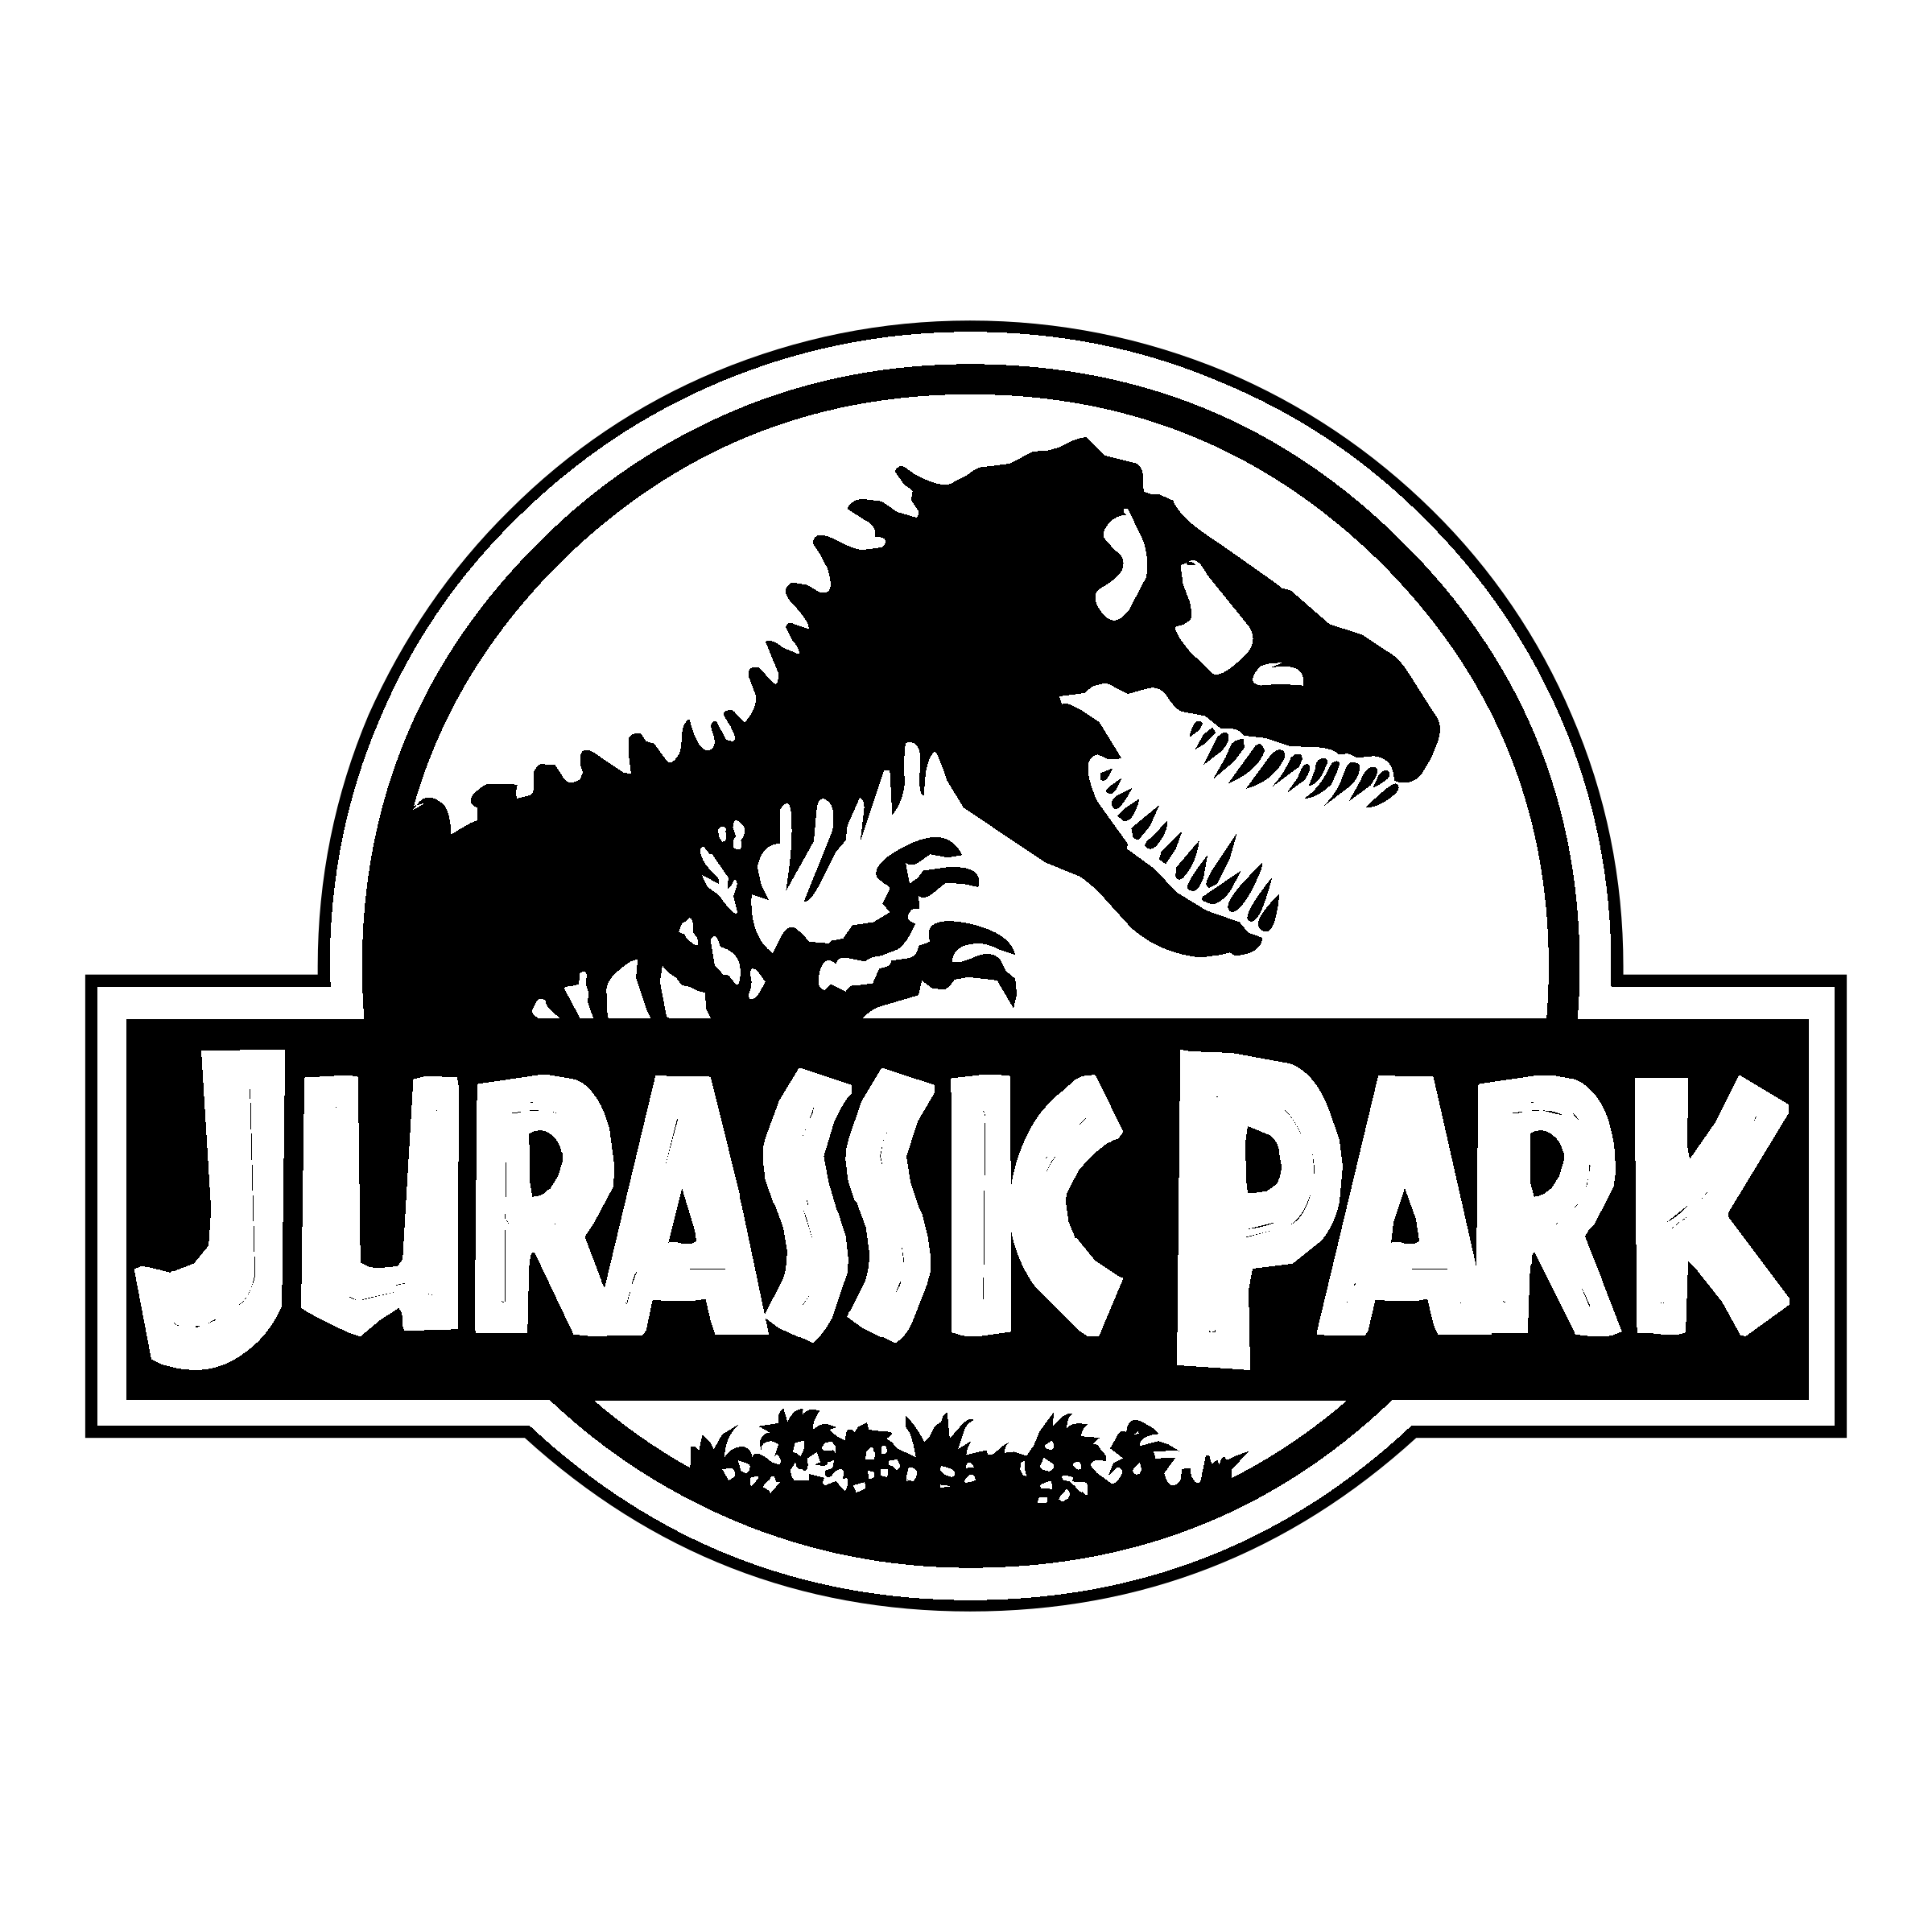 Jurassic Park Logo Black And White.